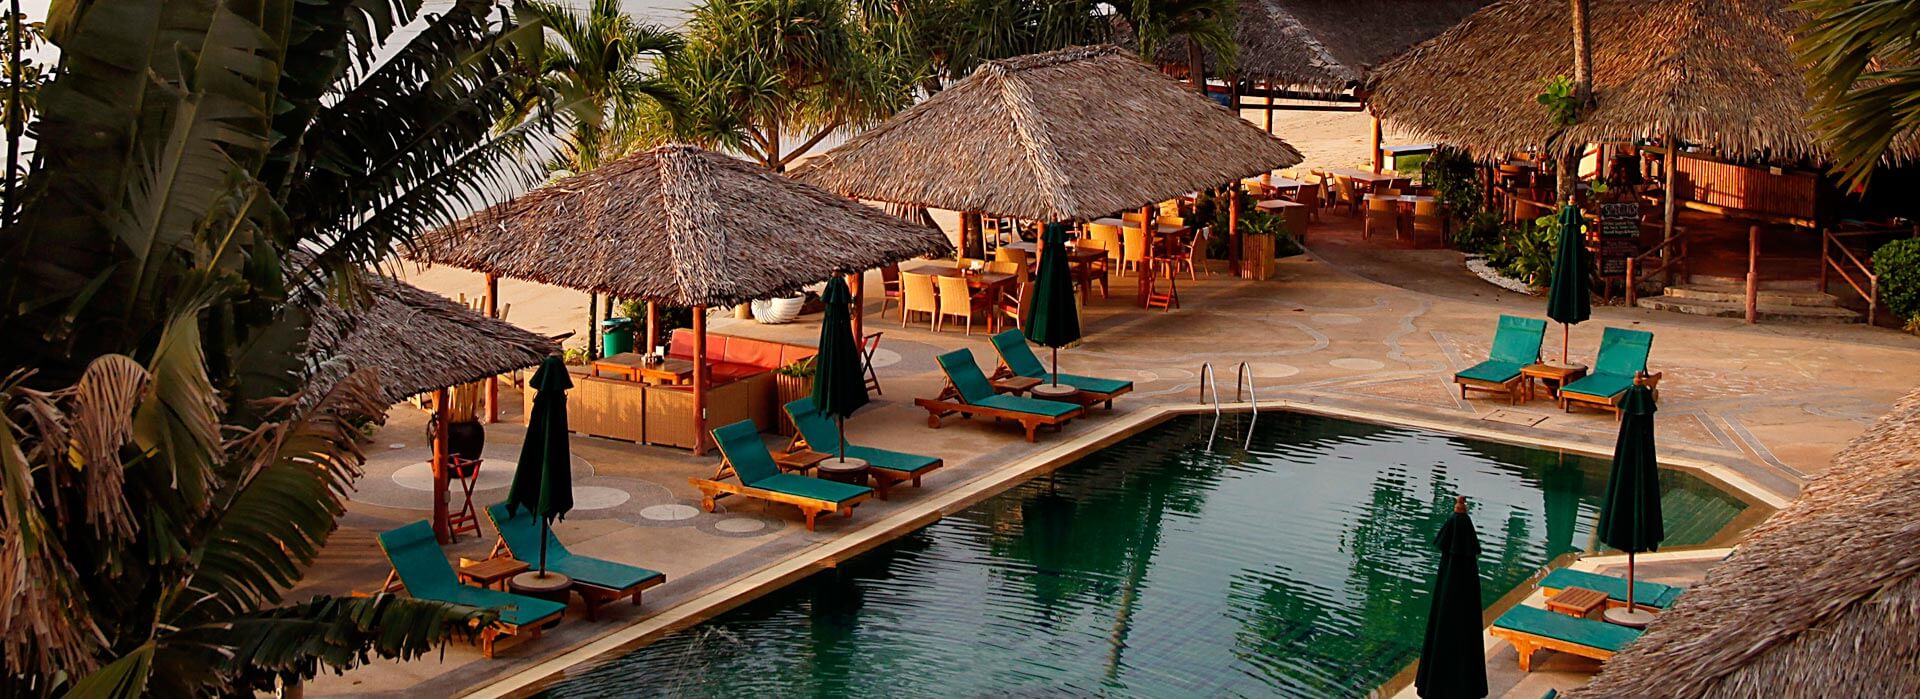 Friendship Beach Resort & Atmanjai Wellness spa in Rawai Phuket